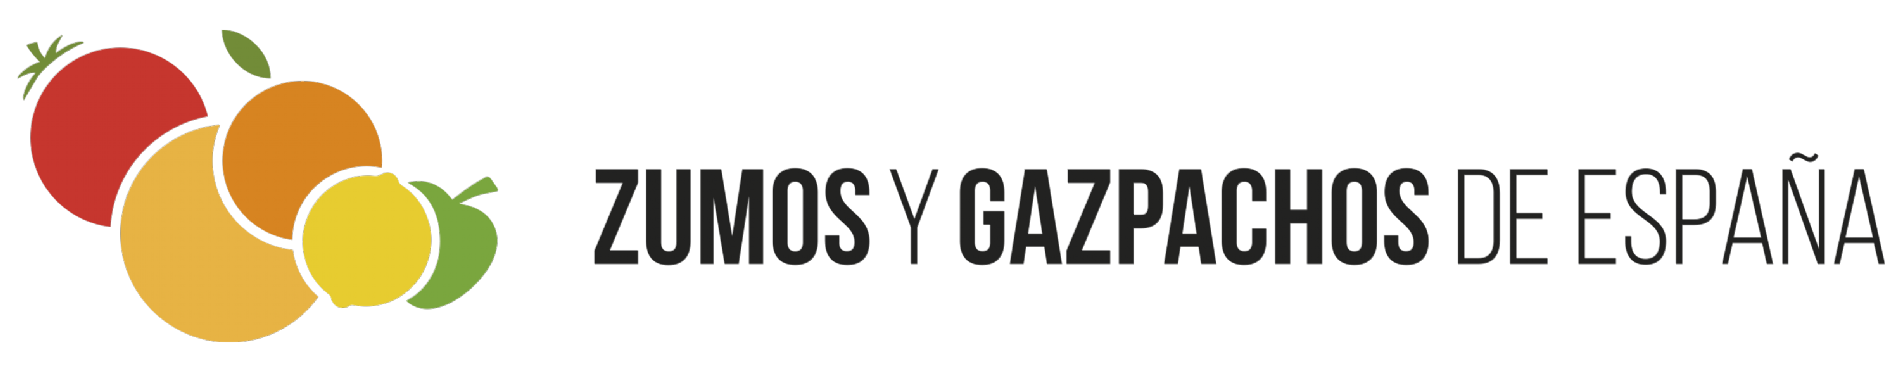 Logo zumos y gazpachos